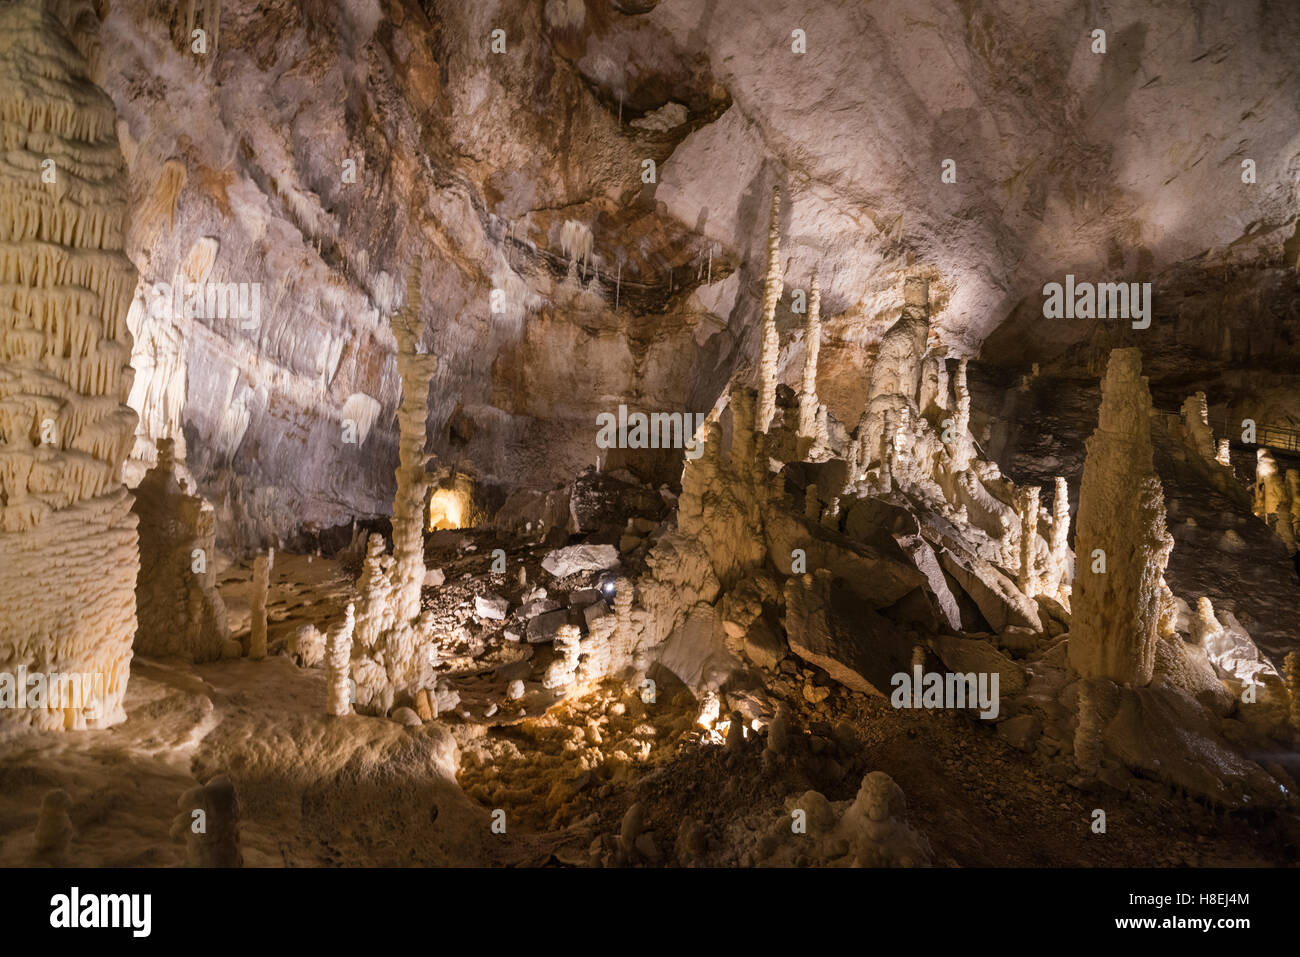 Lo spettacolo naturale delle grotte di Frasassi con sharp stalattiti e stalagmiti, Genga, provincia di Ancona, nelle Marche Italia, Europa Foto Stock